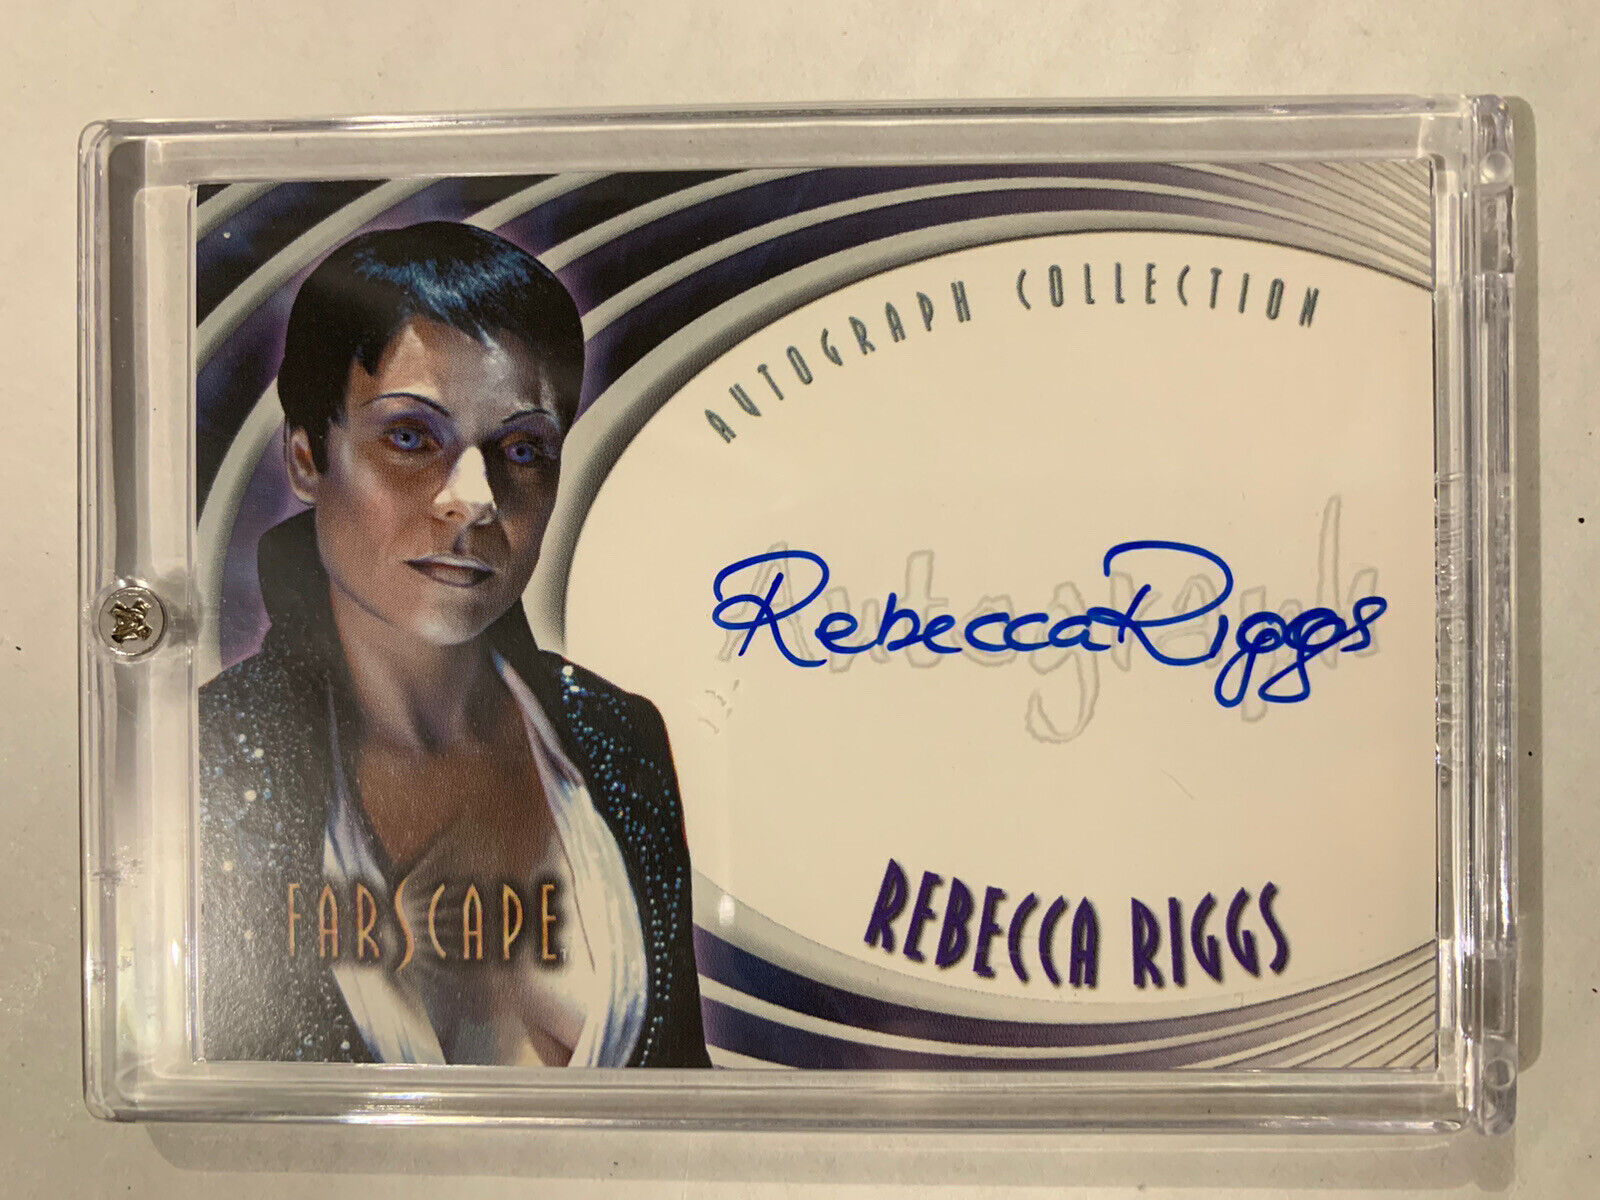 FARSCAPE Autograph Auto Card A24 Rebecca Riggs